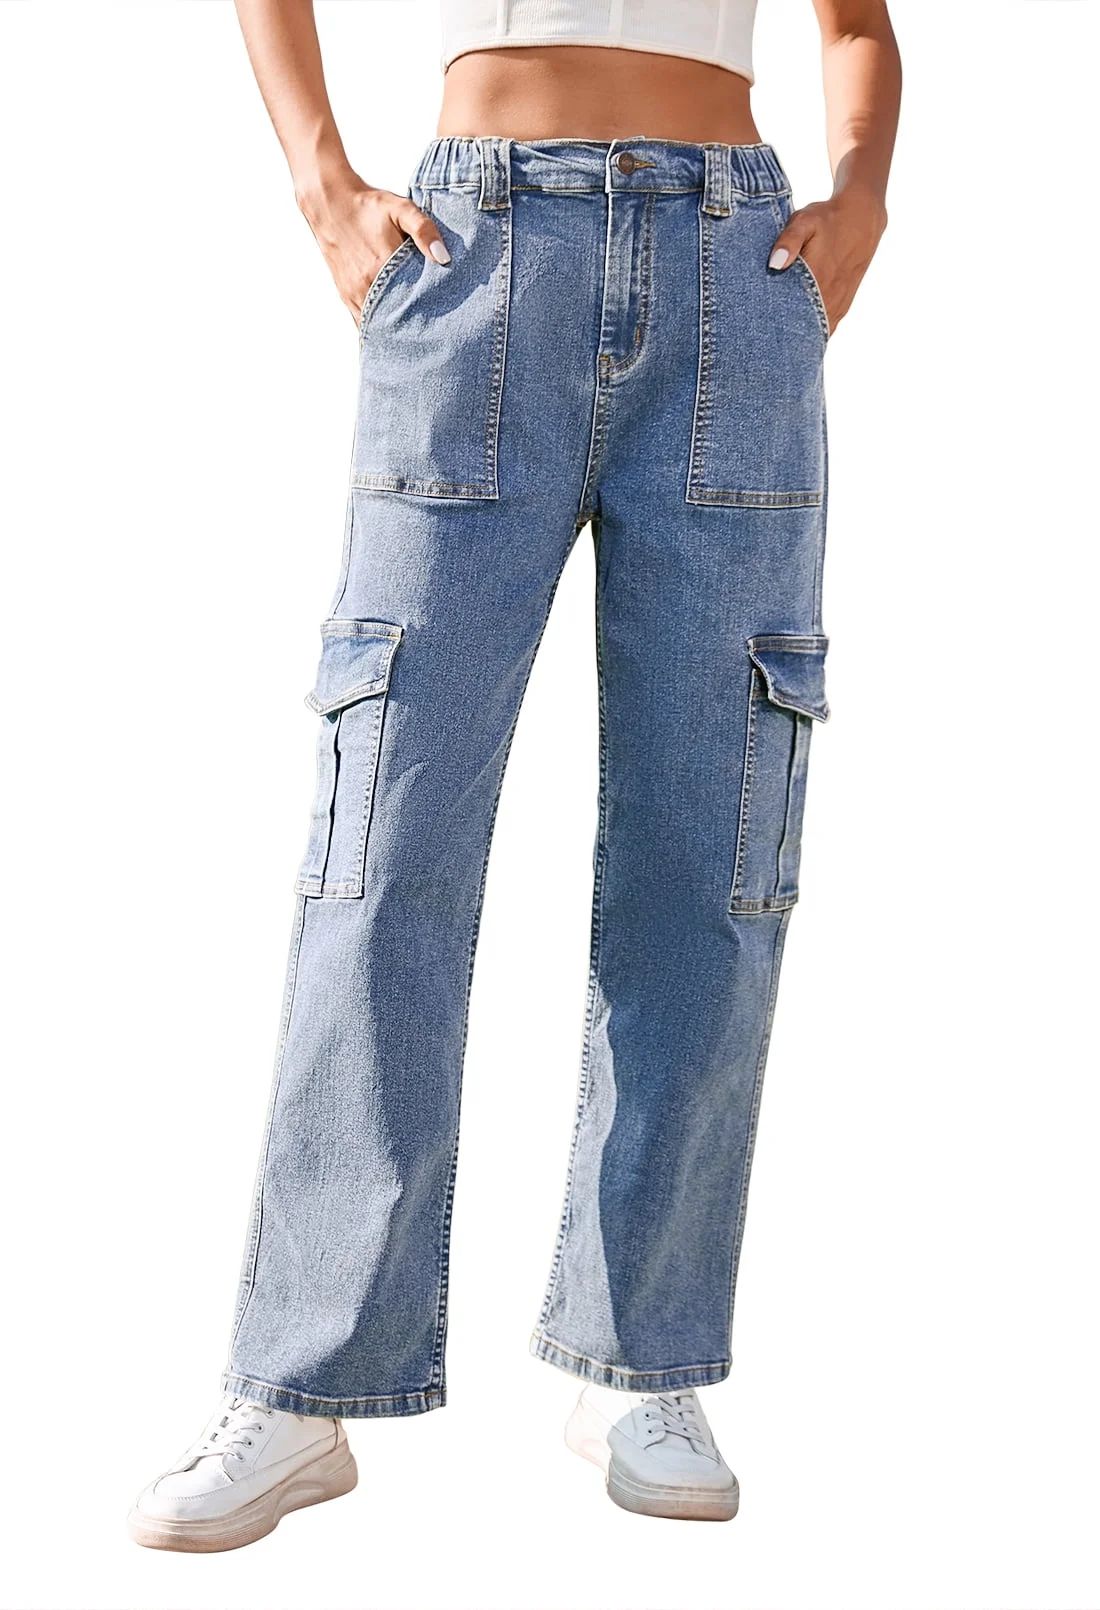 Pink Queen Women's High Waist Cargo Jeans Flap Pocket Wide Leg Denim Pants Light Blue M | Walmart (US)